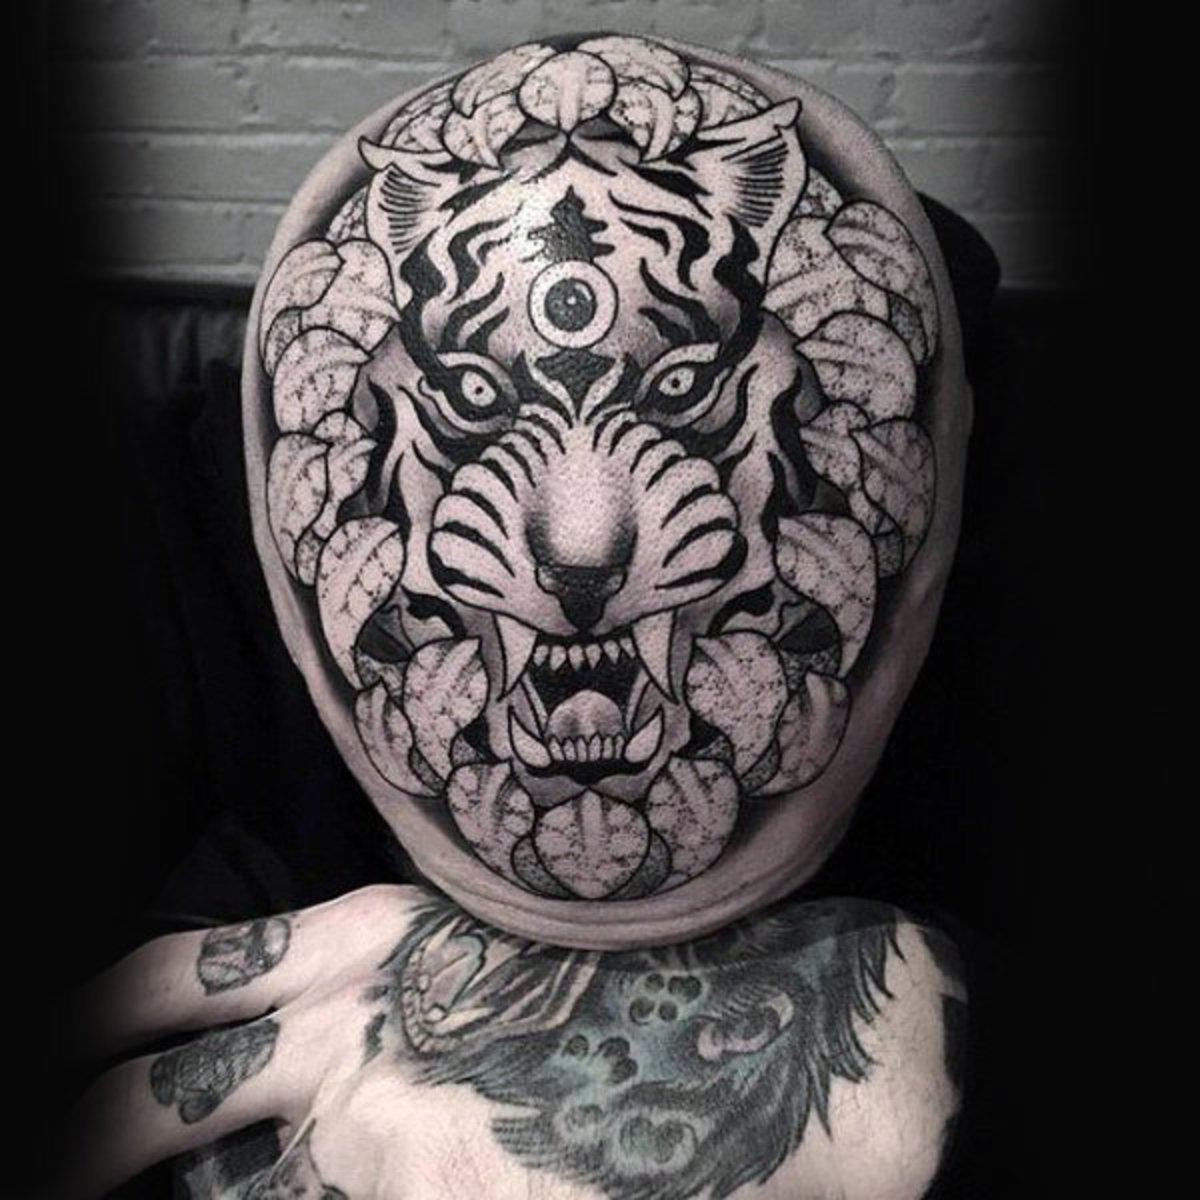 tetování, tetování, nápad na tetování, inspirace tetováním, design tetování, tetování na hlavě, inkoust, inkoust